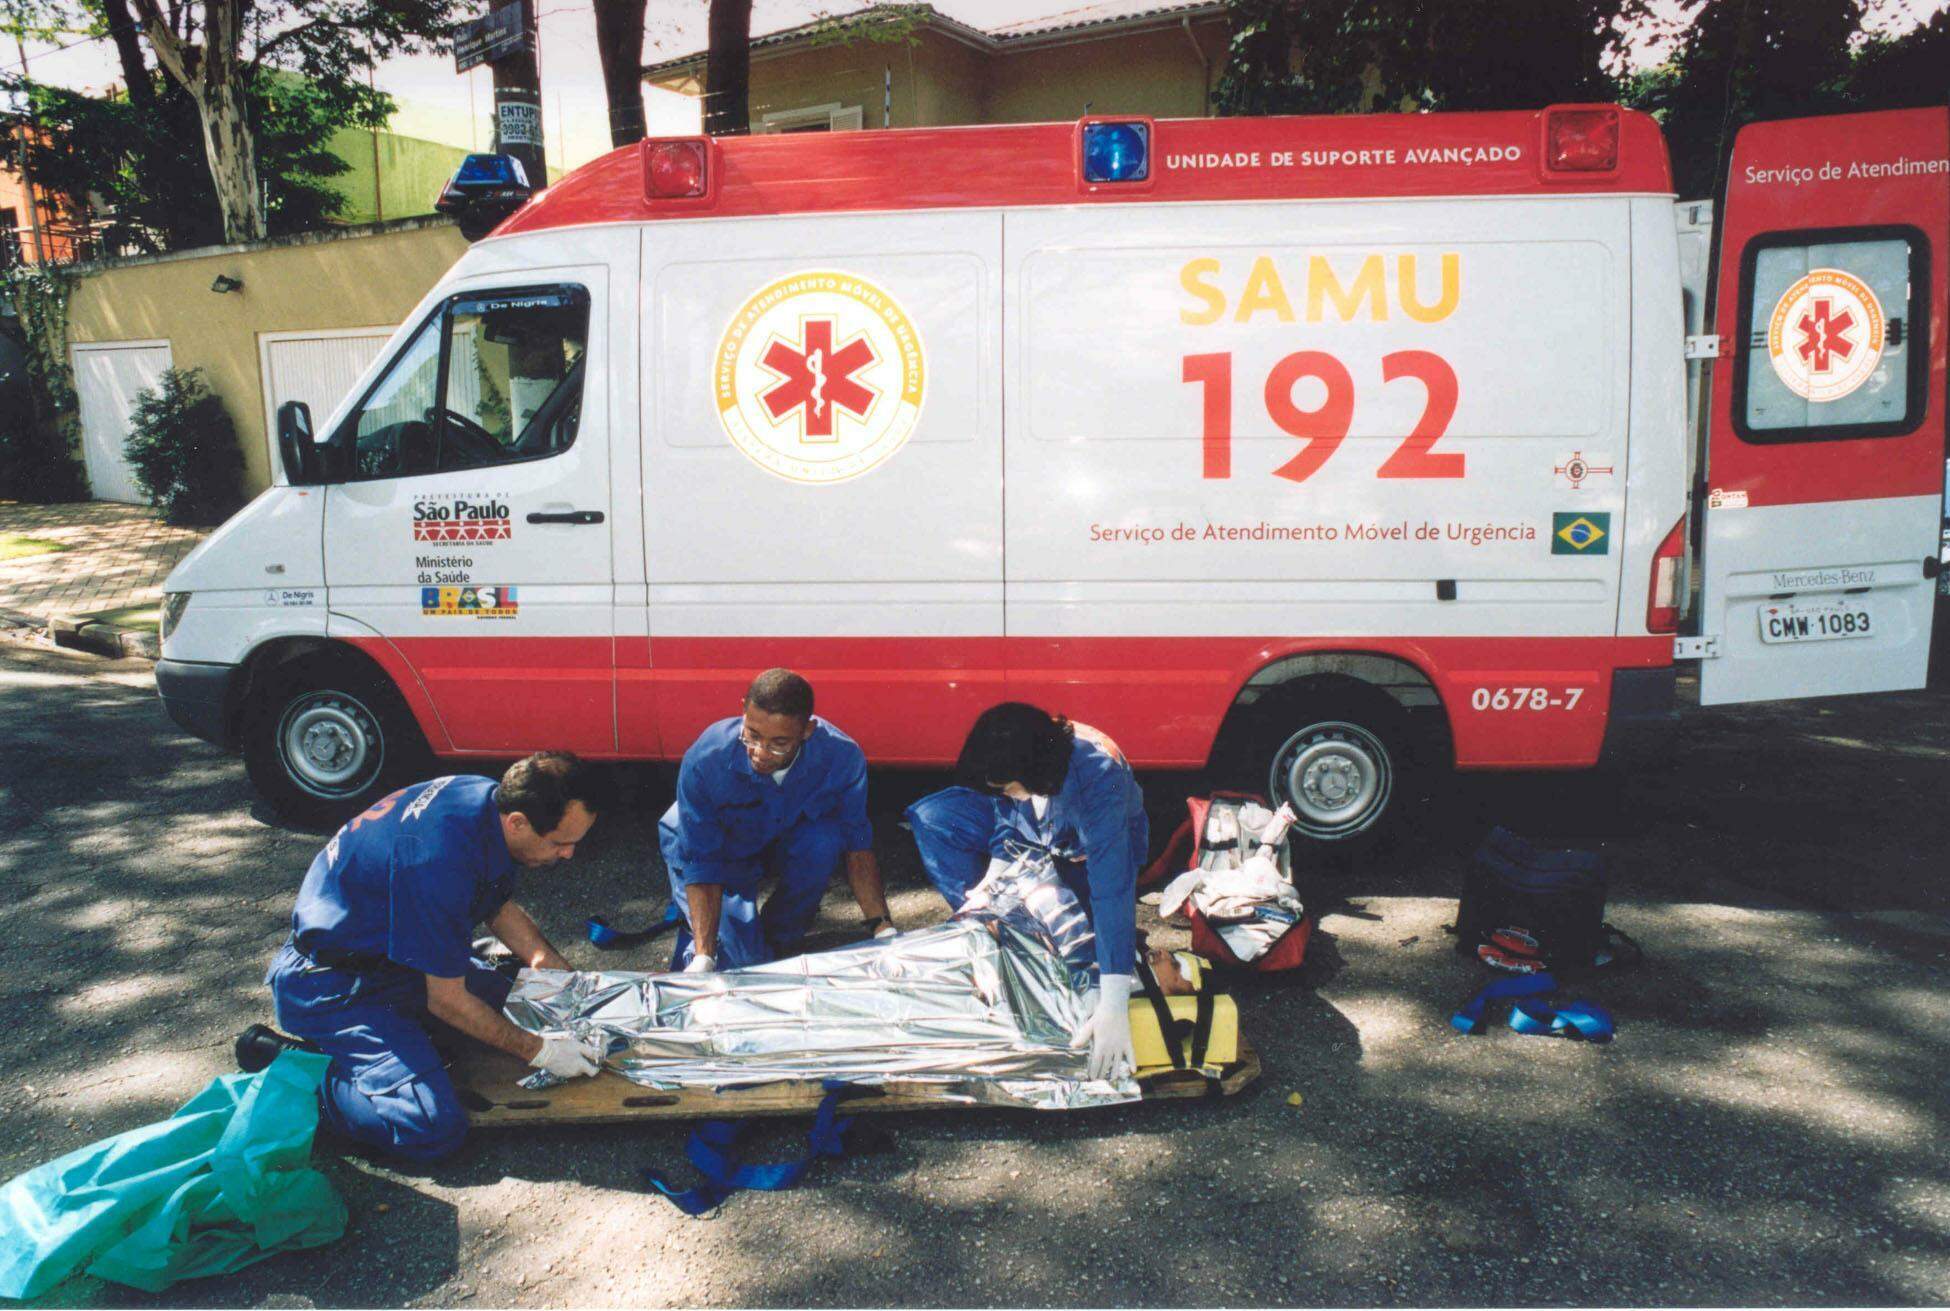 Foto de paramédicos e ambulância do Samu.